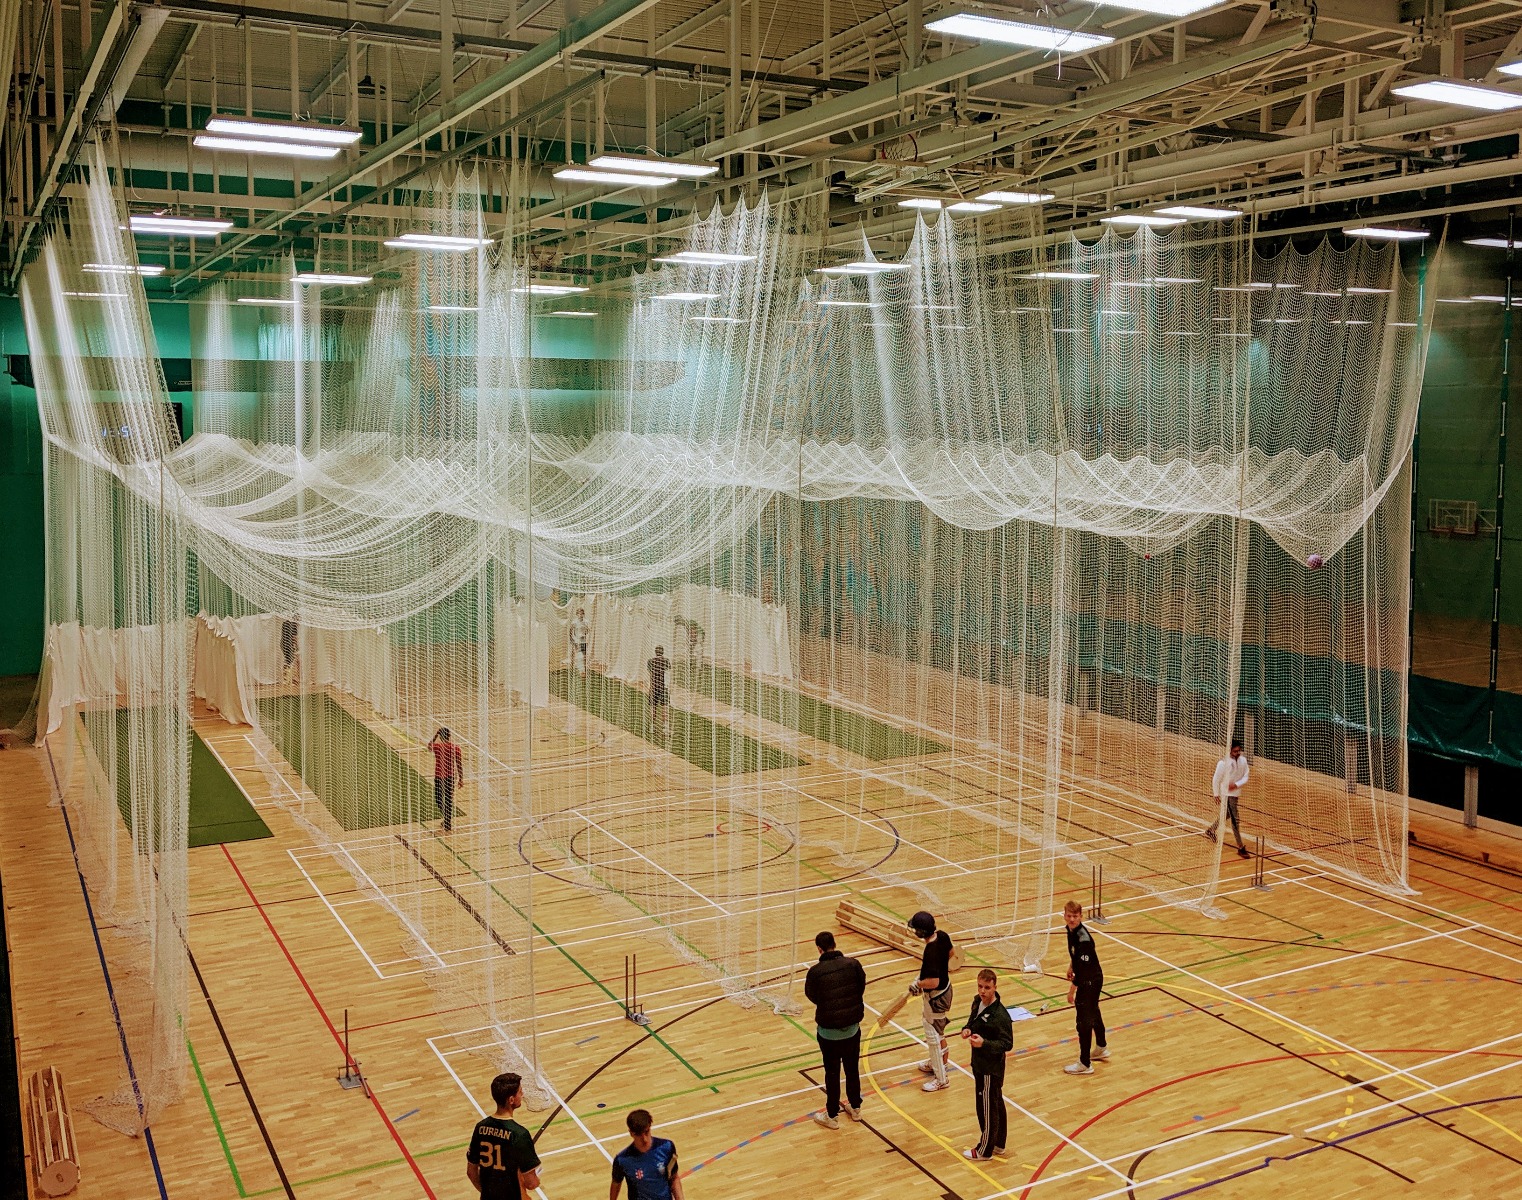 Indoor cricket practice netting